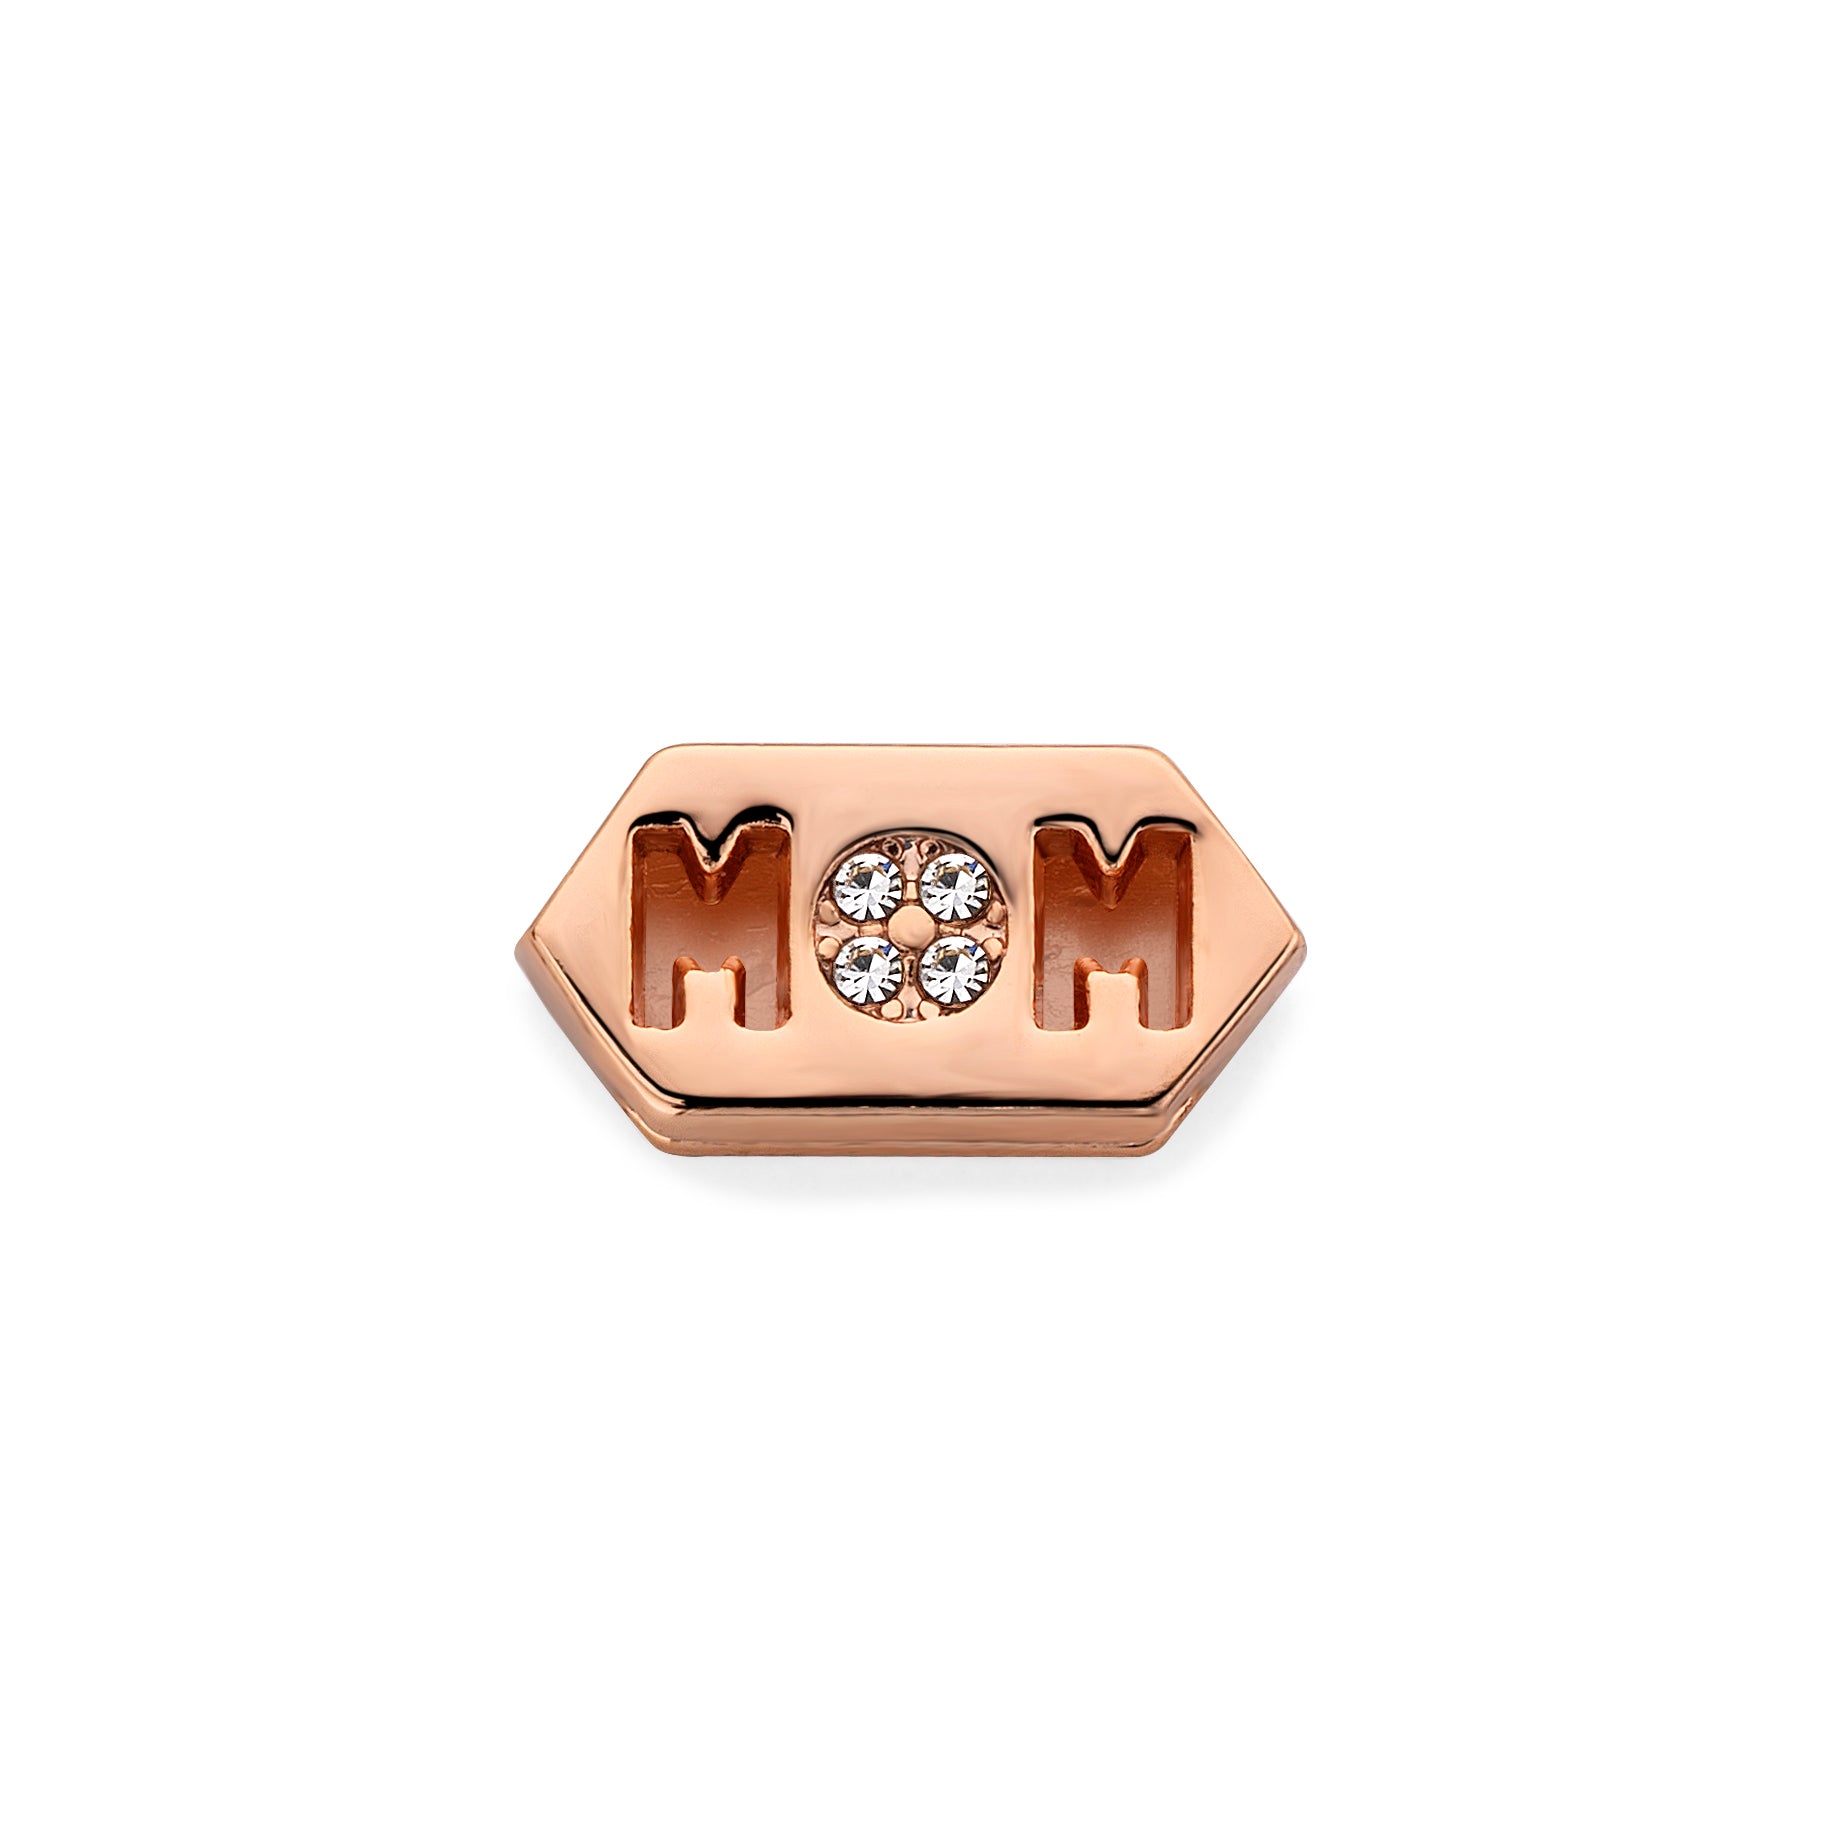 Mesh charm mom cube rosé gold